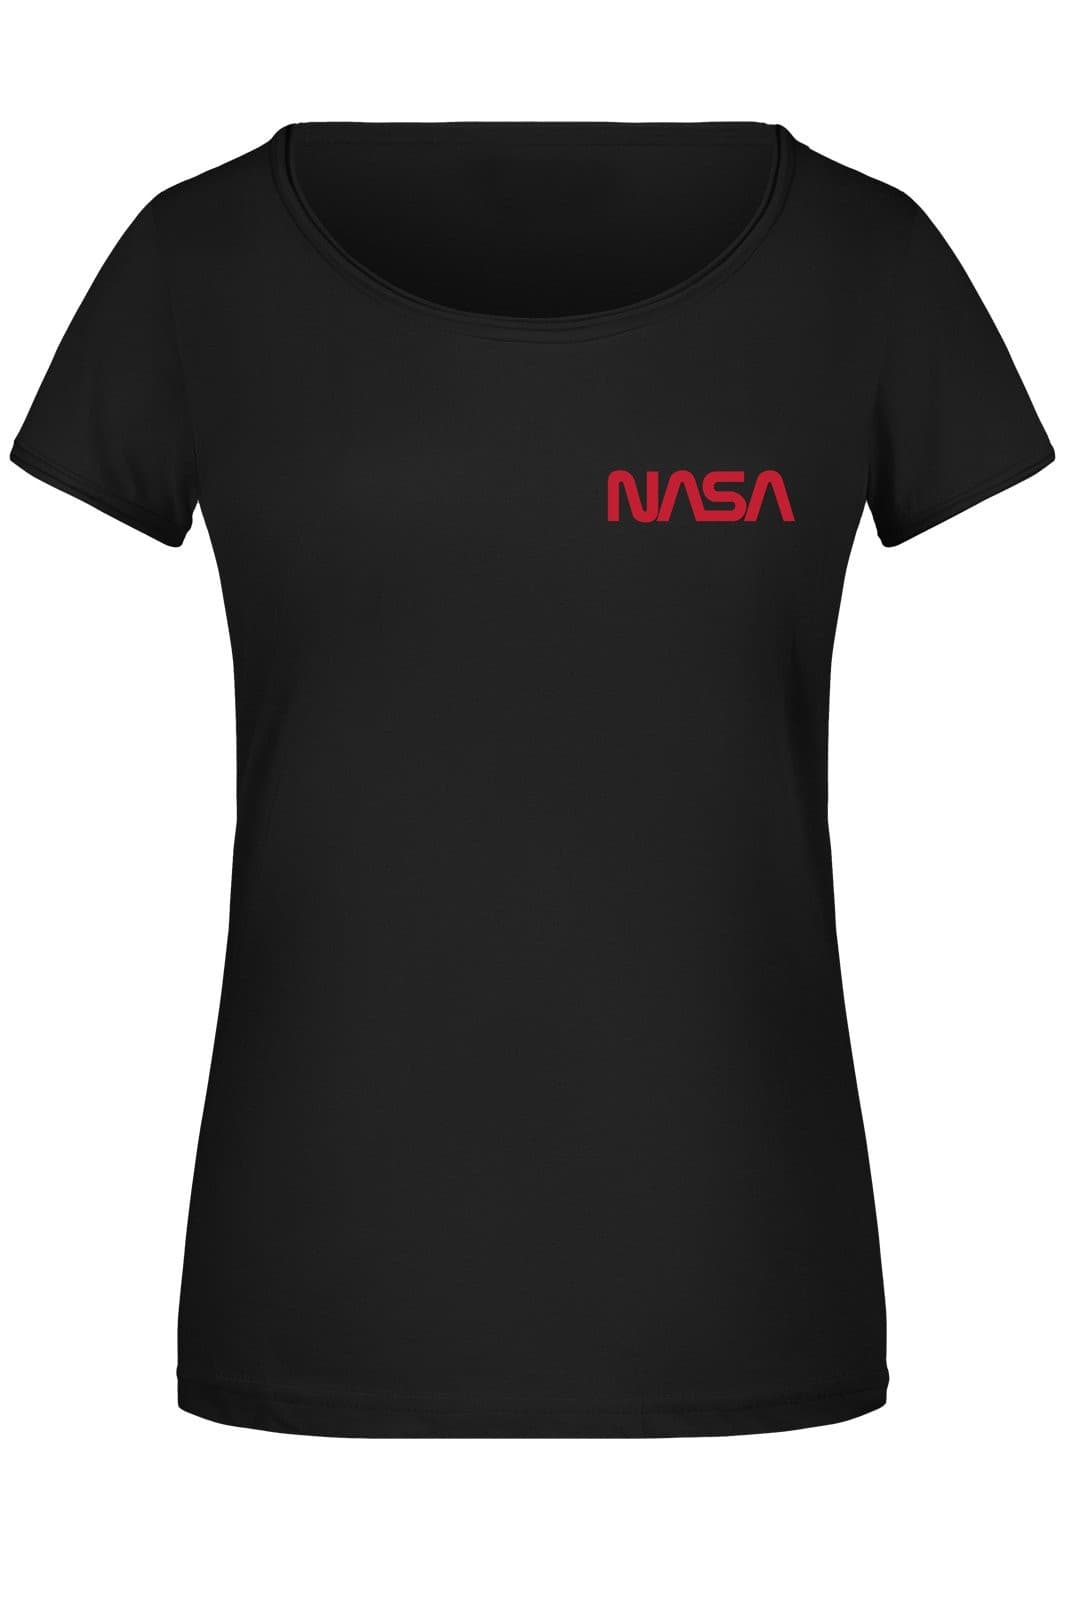 Bild: T-Shirt Damen - NASA Worm Logo (Klein) Geschenkidee